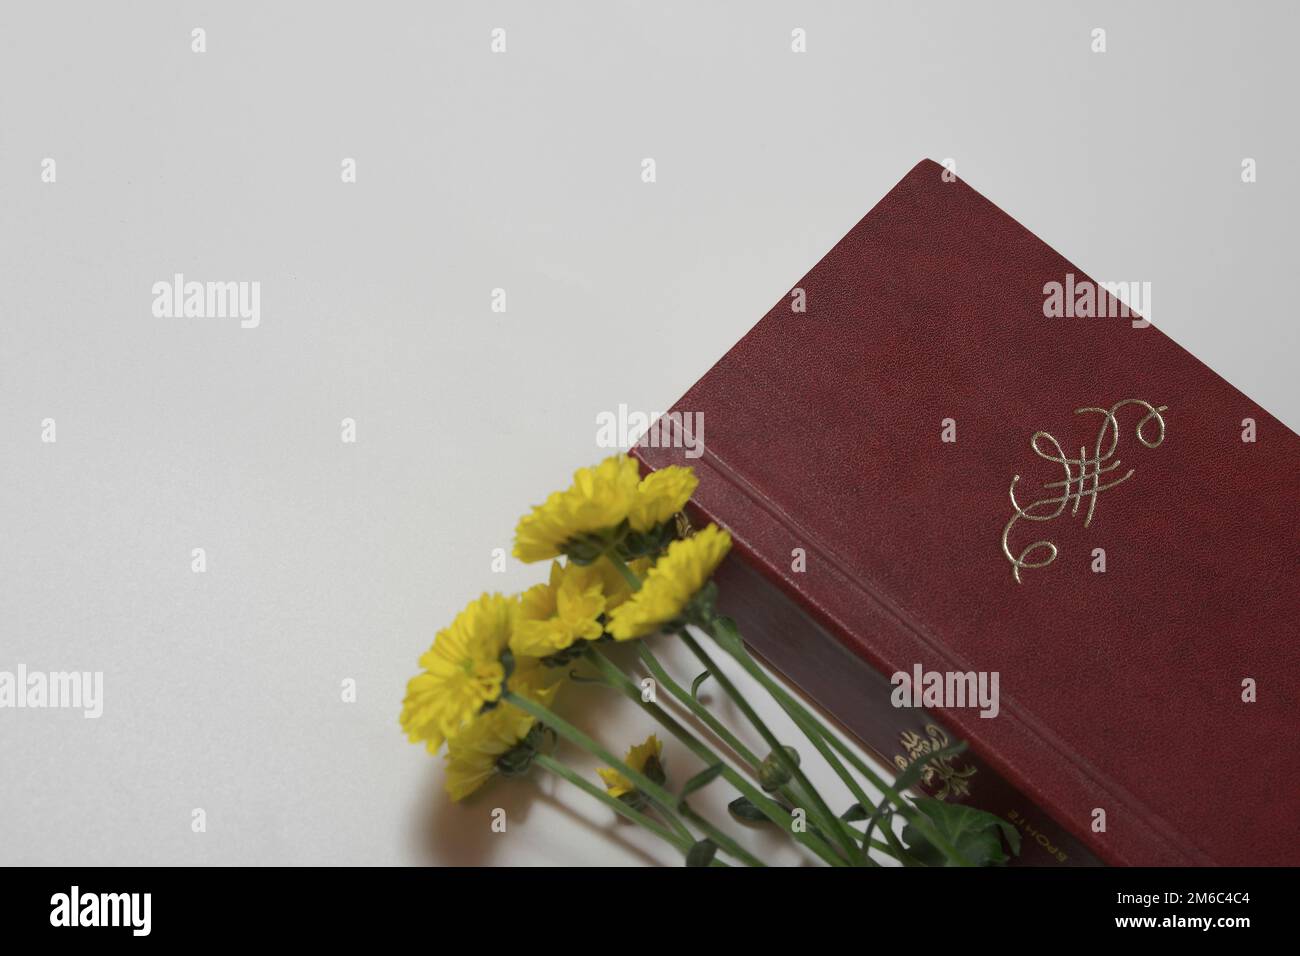 Un vieux livre et des fleurs jaunes dans la composition sans titre. Ornement ou monogramme et espace libre pour le titre et le texte Banque D'Images